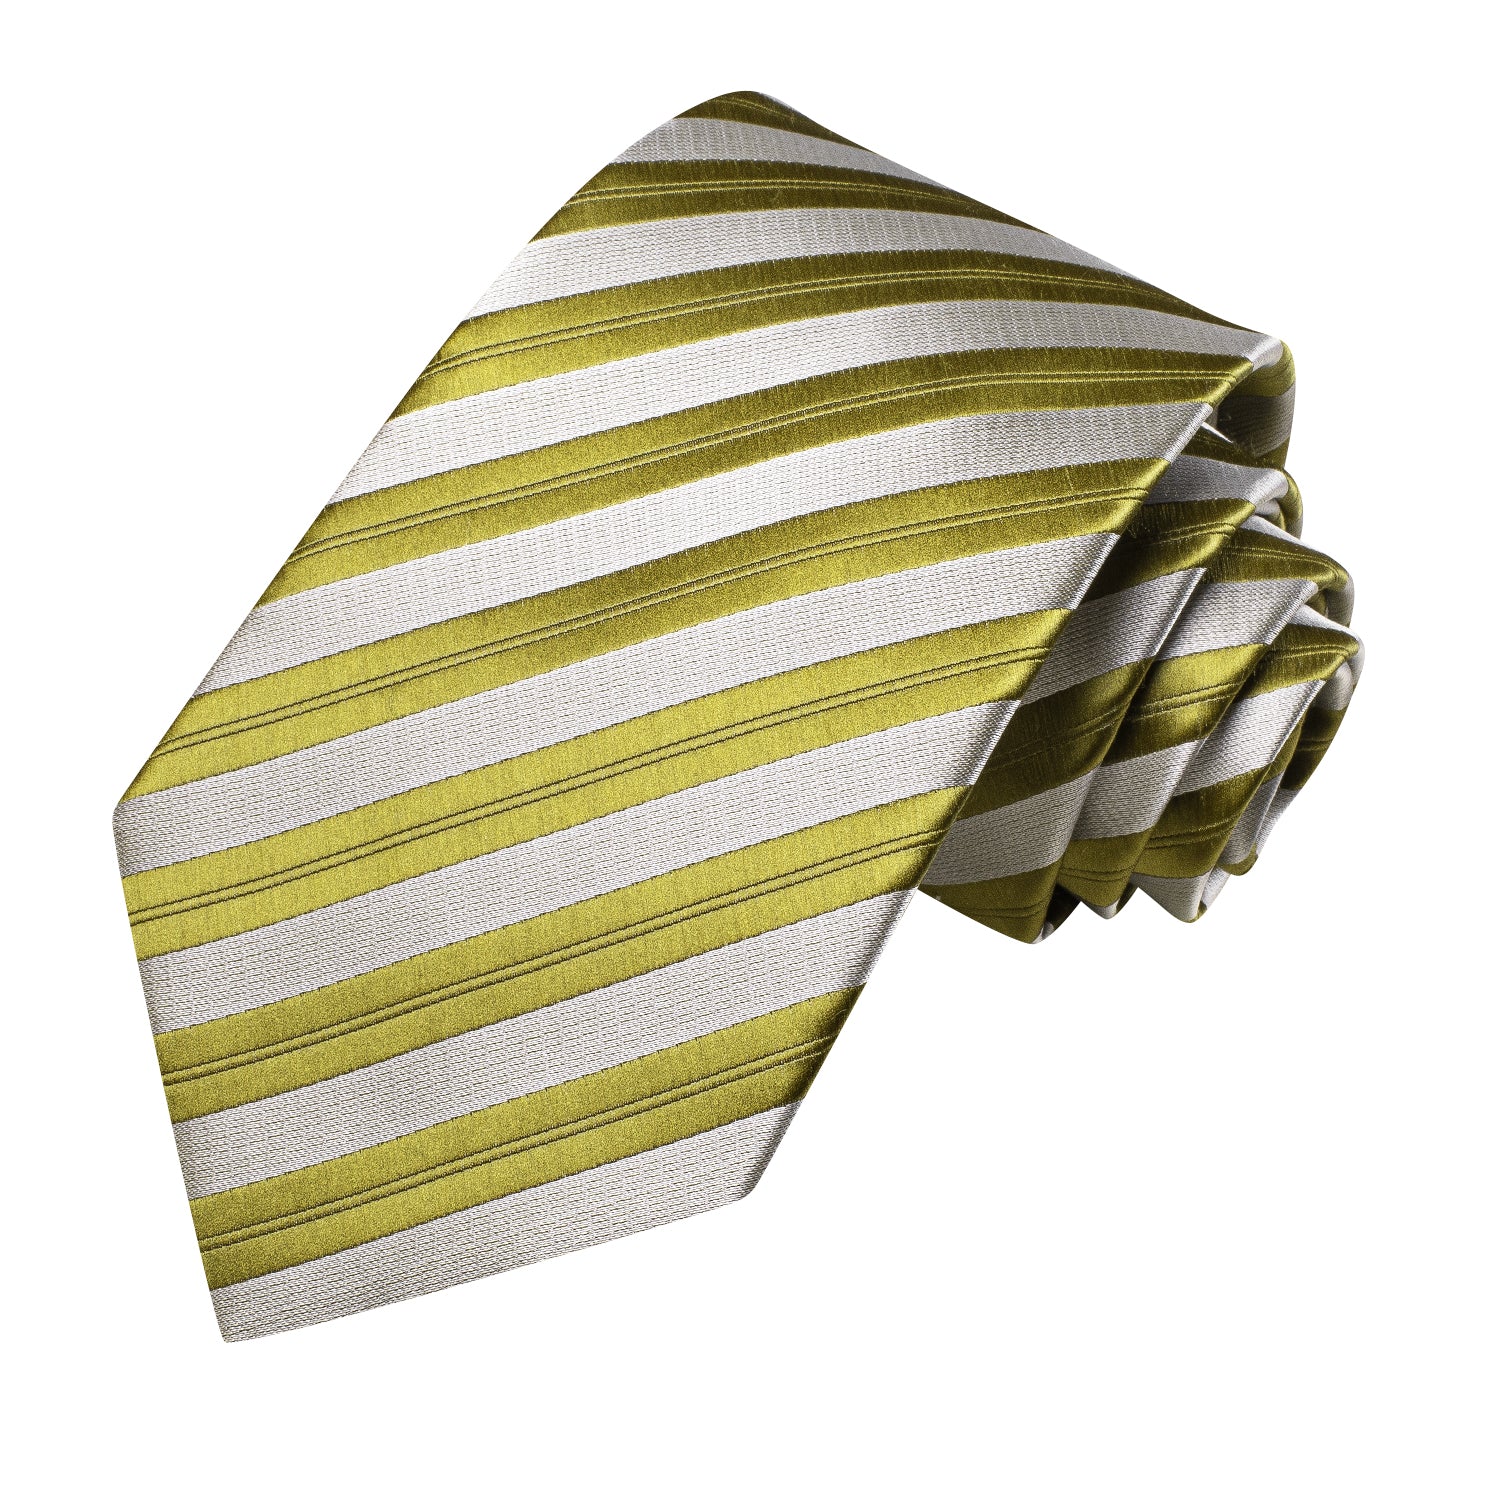 Olive Green White Strip Tie Pocket Square Cufflinks Set